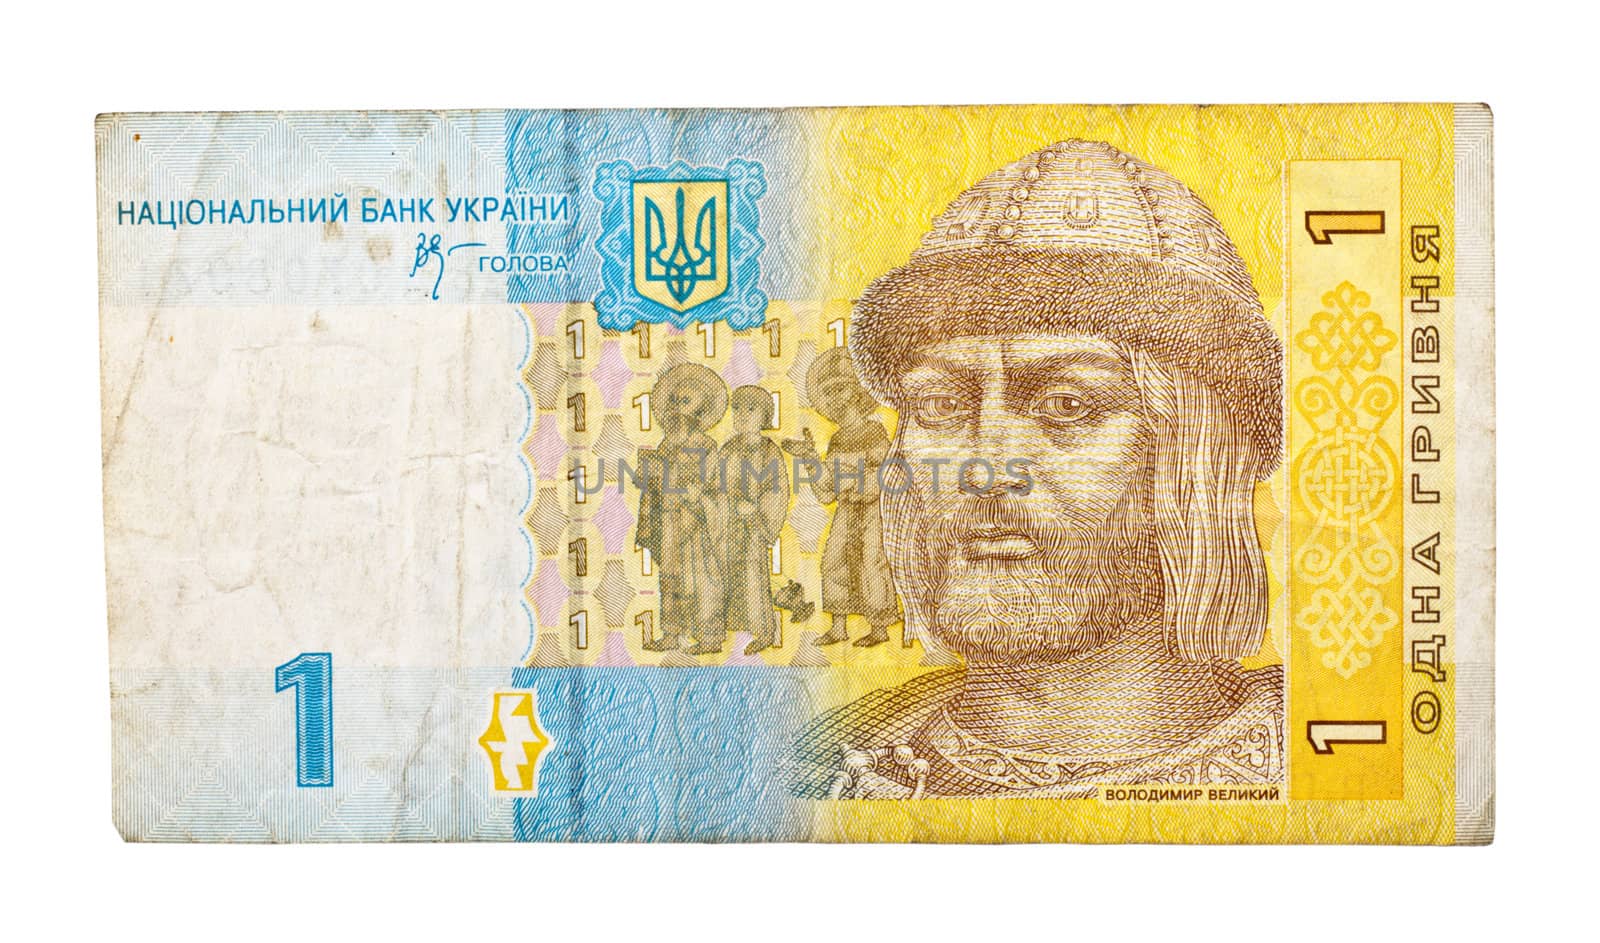 ukrainian money (hryvnia) isolated on white background